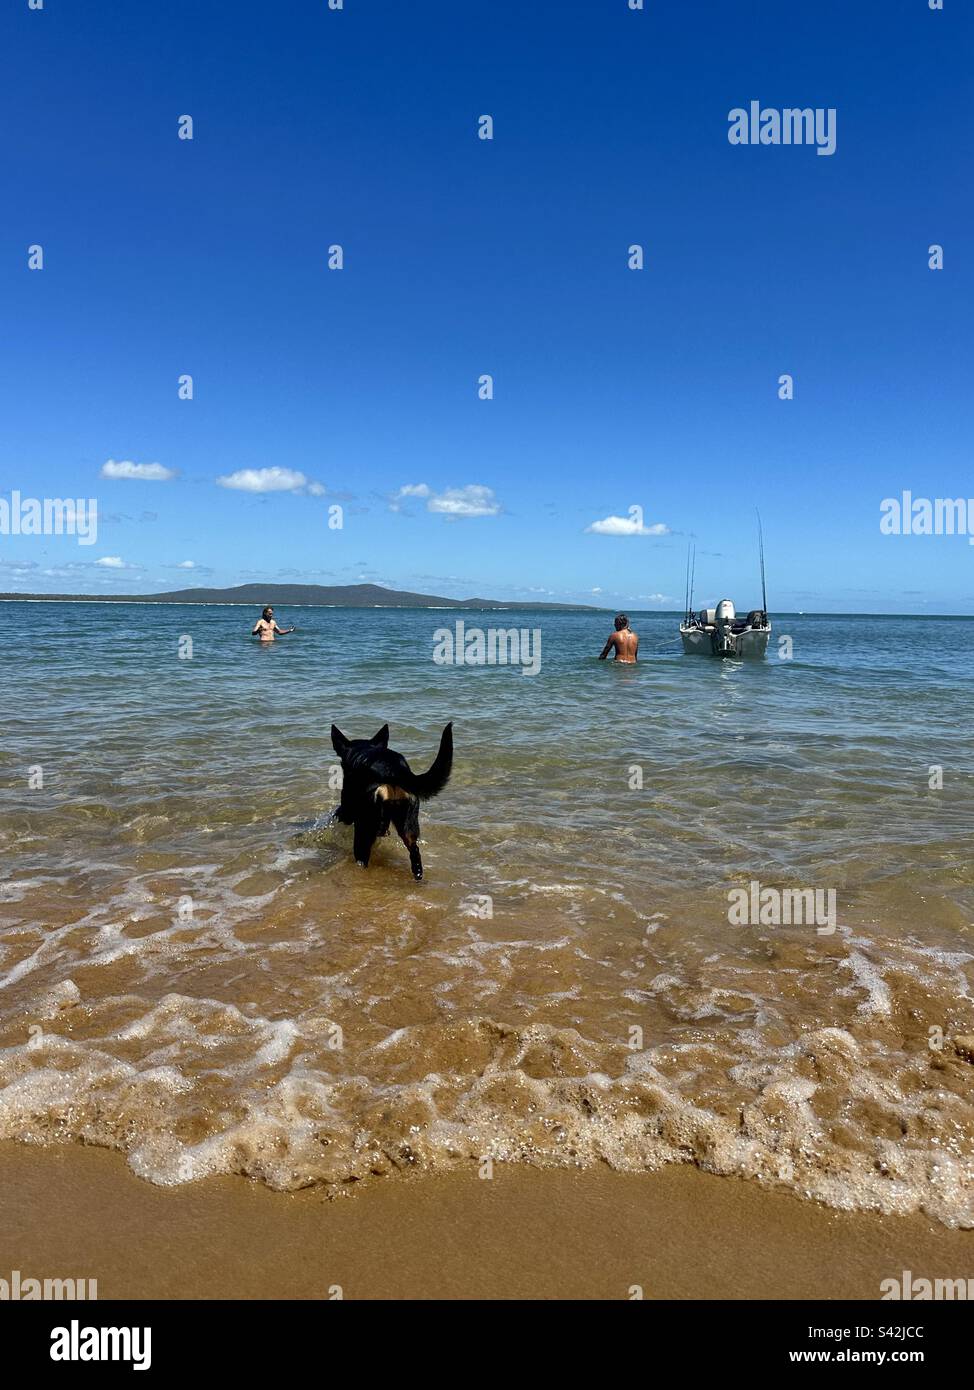 Cane da spiaggia☀️kelpie cane☀️boat☀️water ☀️fishing☀️summer giorno☀️ tempo caldo ☀️holiday☀️ Australia ☀️ spiaggia ☀️ divertimento ☀️ divertente☀️ montagna ☀️tide☀️ cane nero ☀️swimming ☀️ ragazzi al sole☀️ sabbia☀️ barchetta☀️ Foto Stock